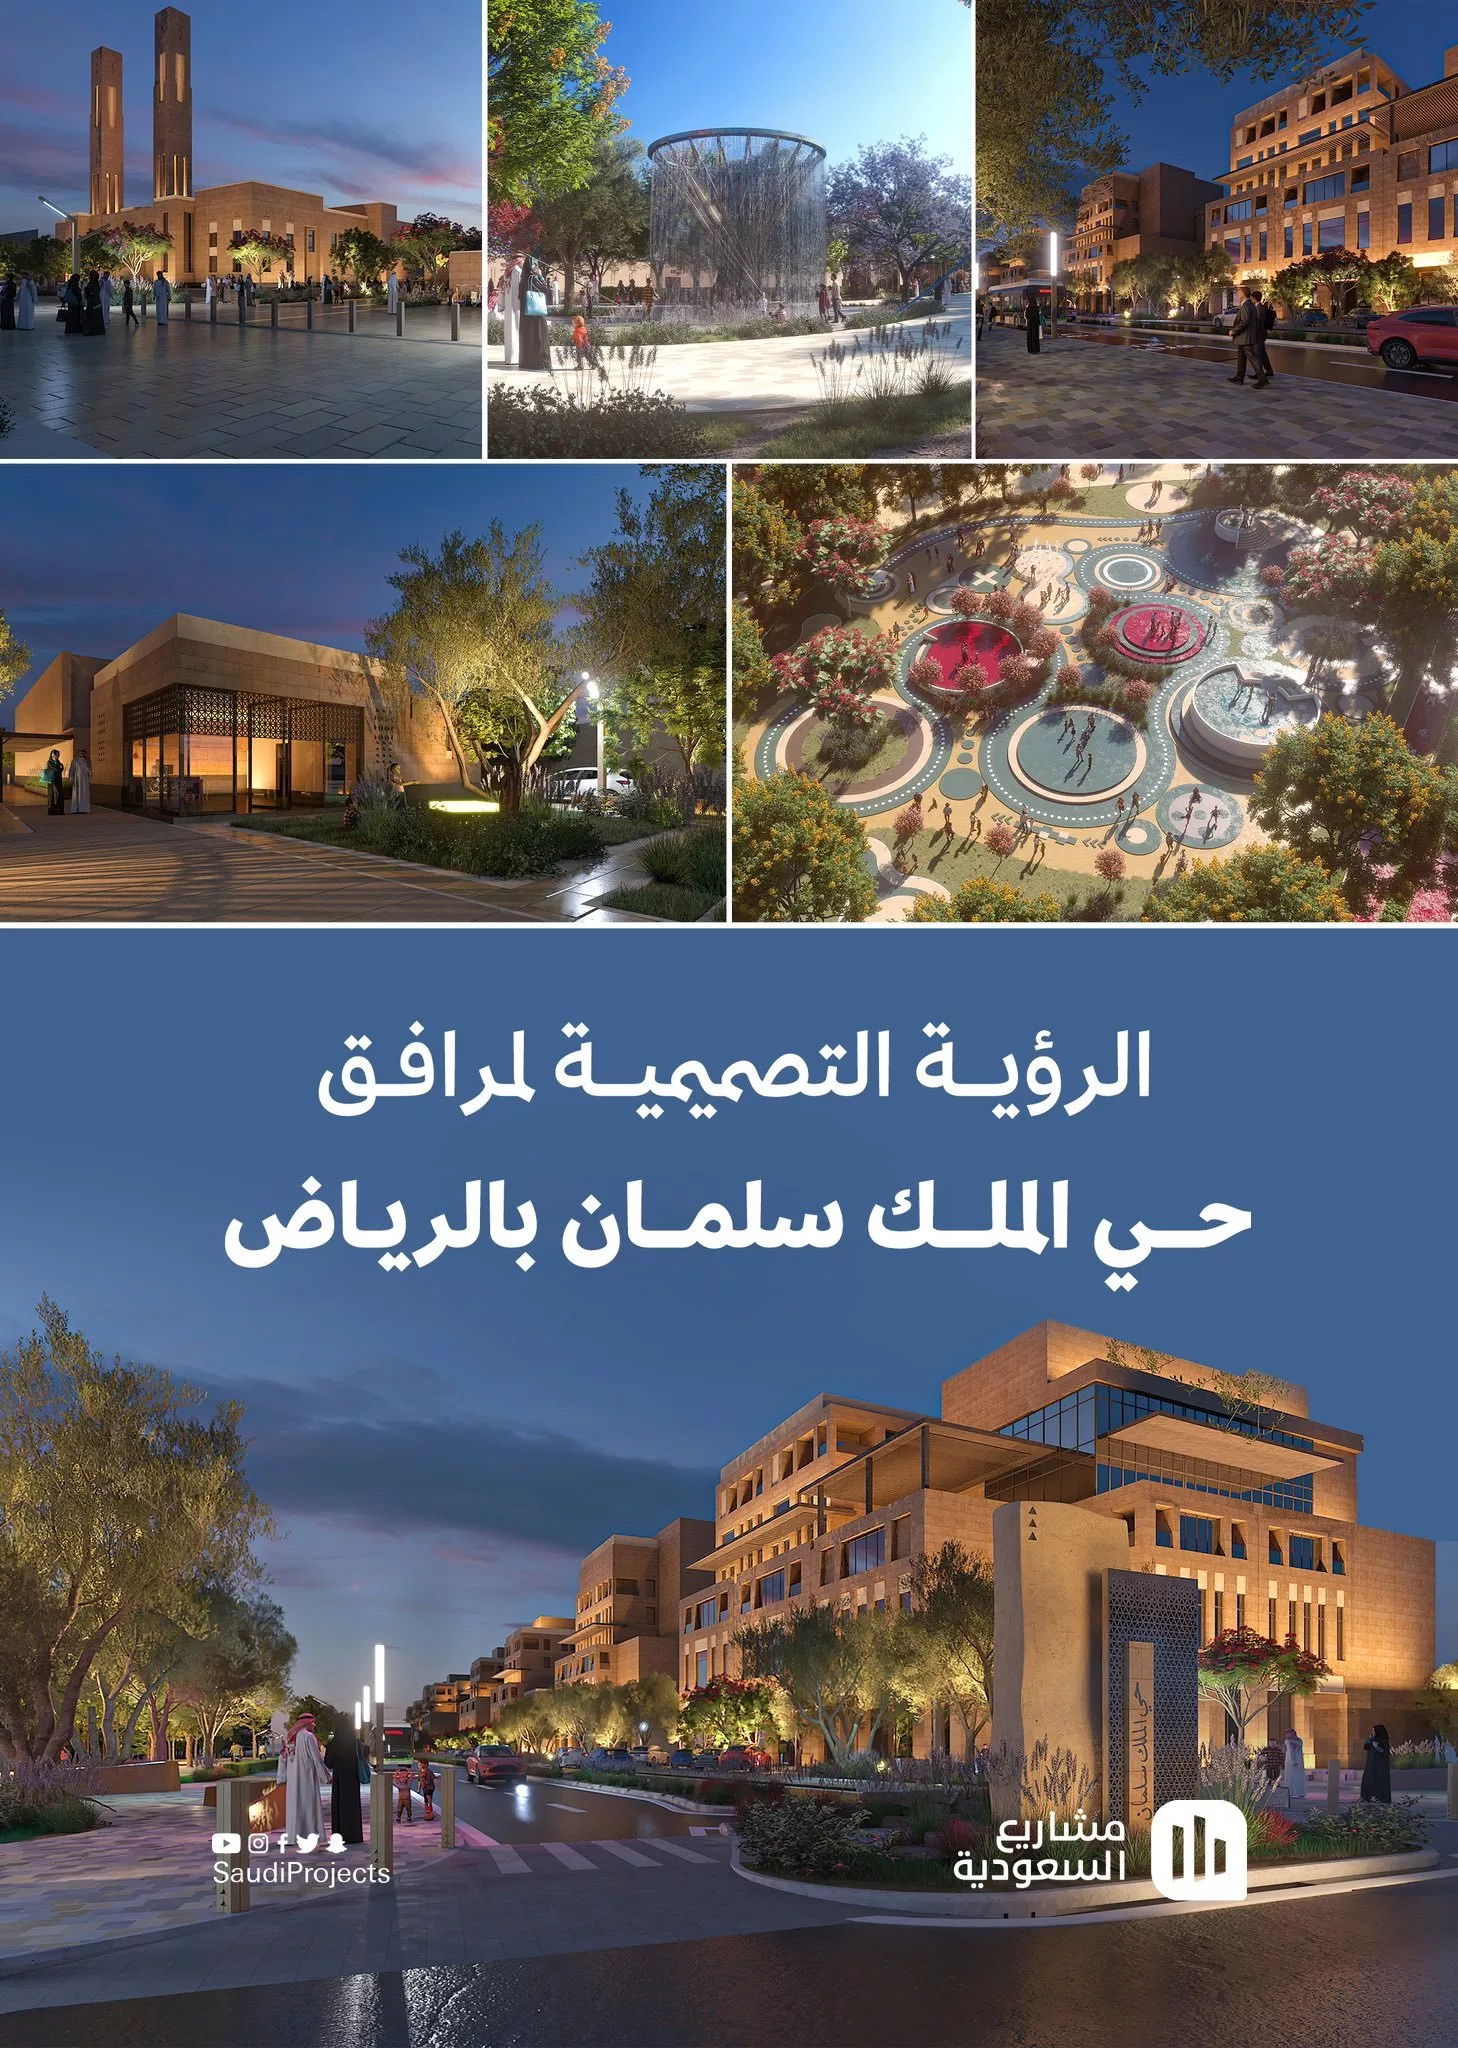 اطلاق حي الملك سلمان في الرياض: مشروع تطويري بيئي وخدماتي للعاصمة